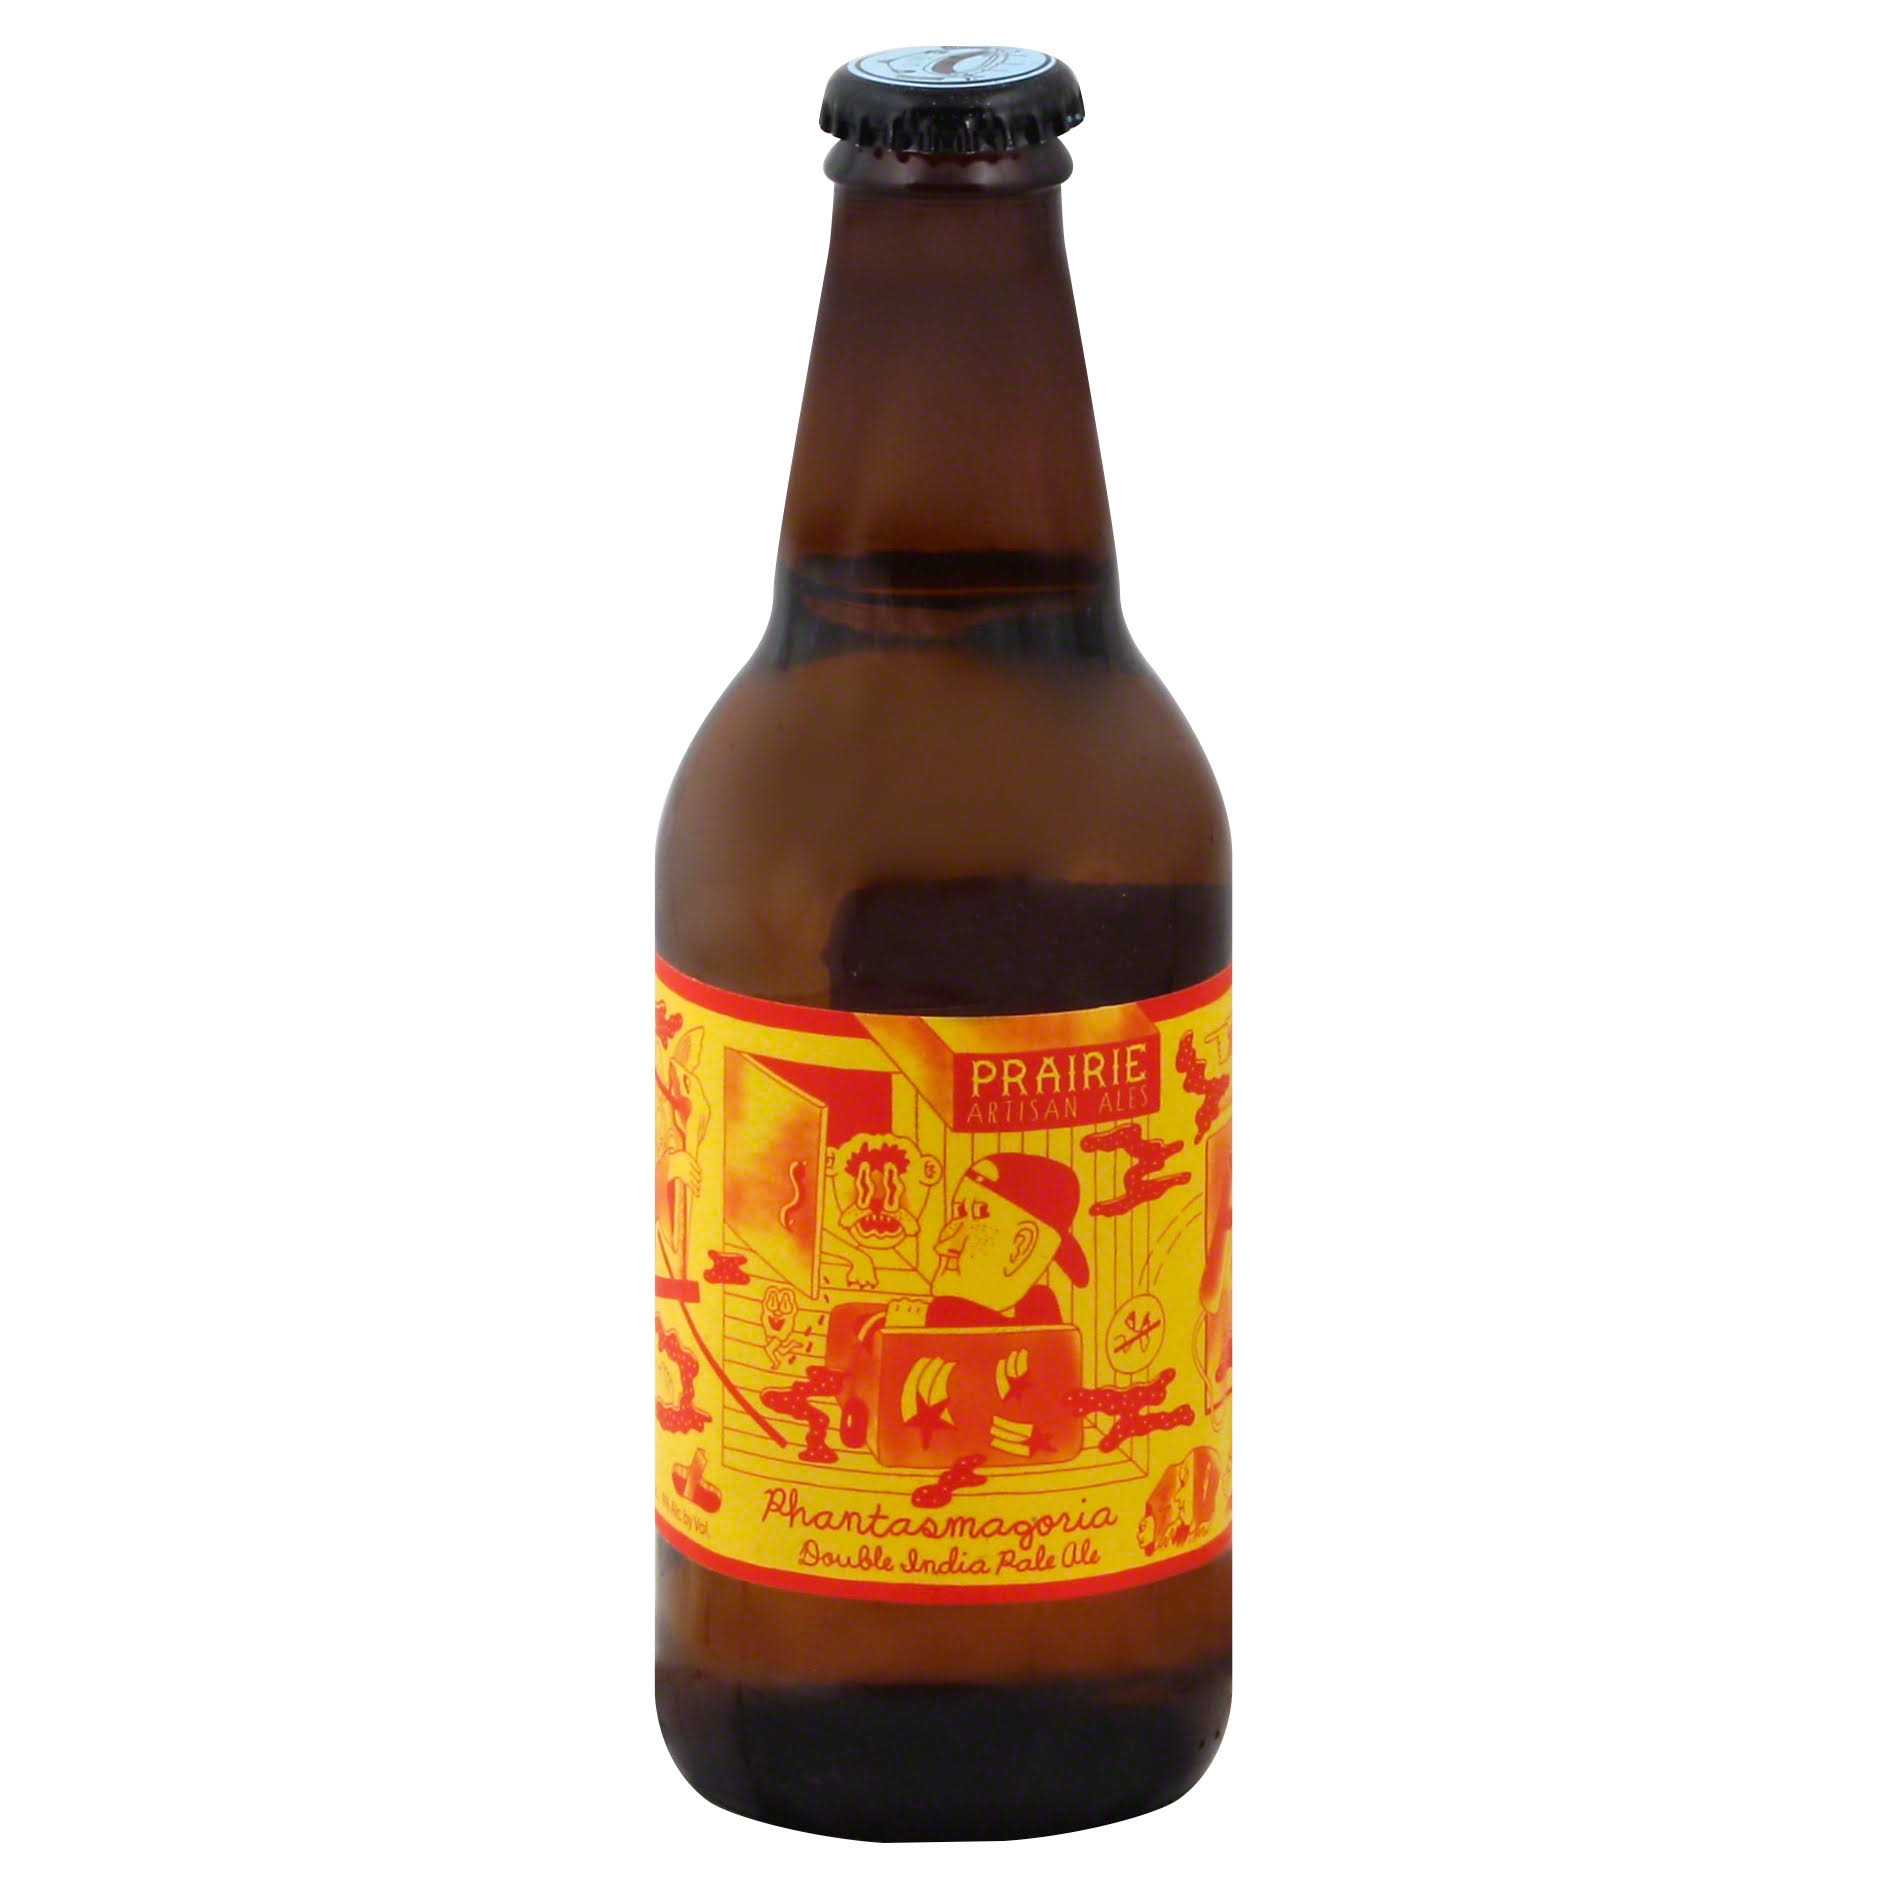 Prairie Artisan Ales Beer, Double India Pale, Phantasmagoria - 12 fl oz